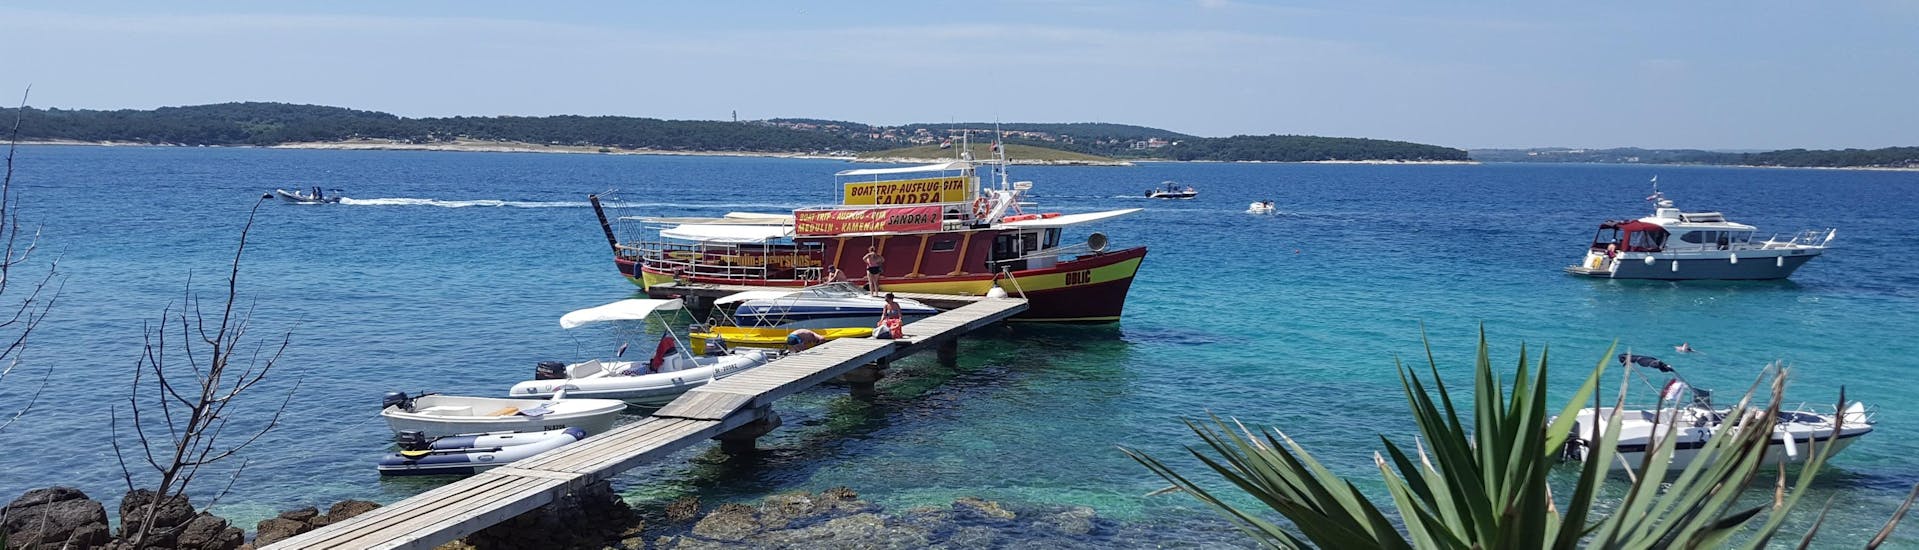 Le bateau de Medulin Excursions est amarré à l'embarcadère alors que les gens montent à bord pour la balade en bateau au Cap Kamenjak depuis Medulin avec baignade.